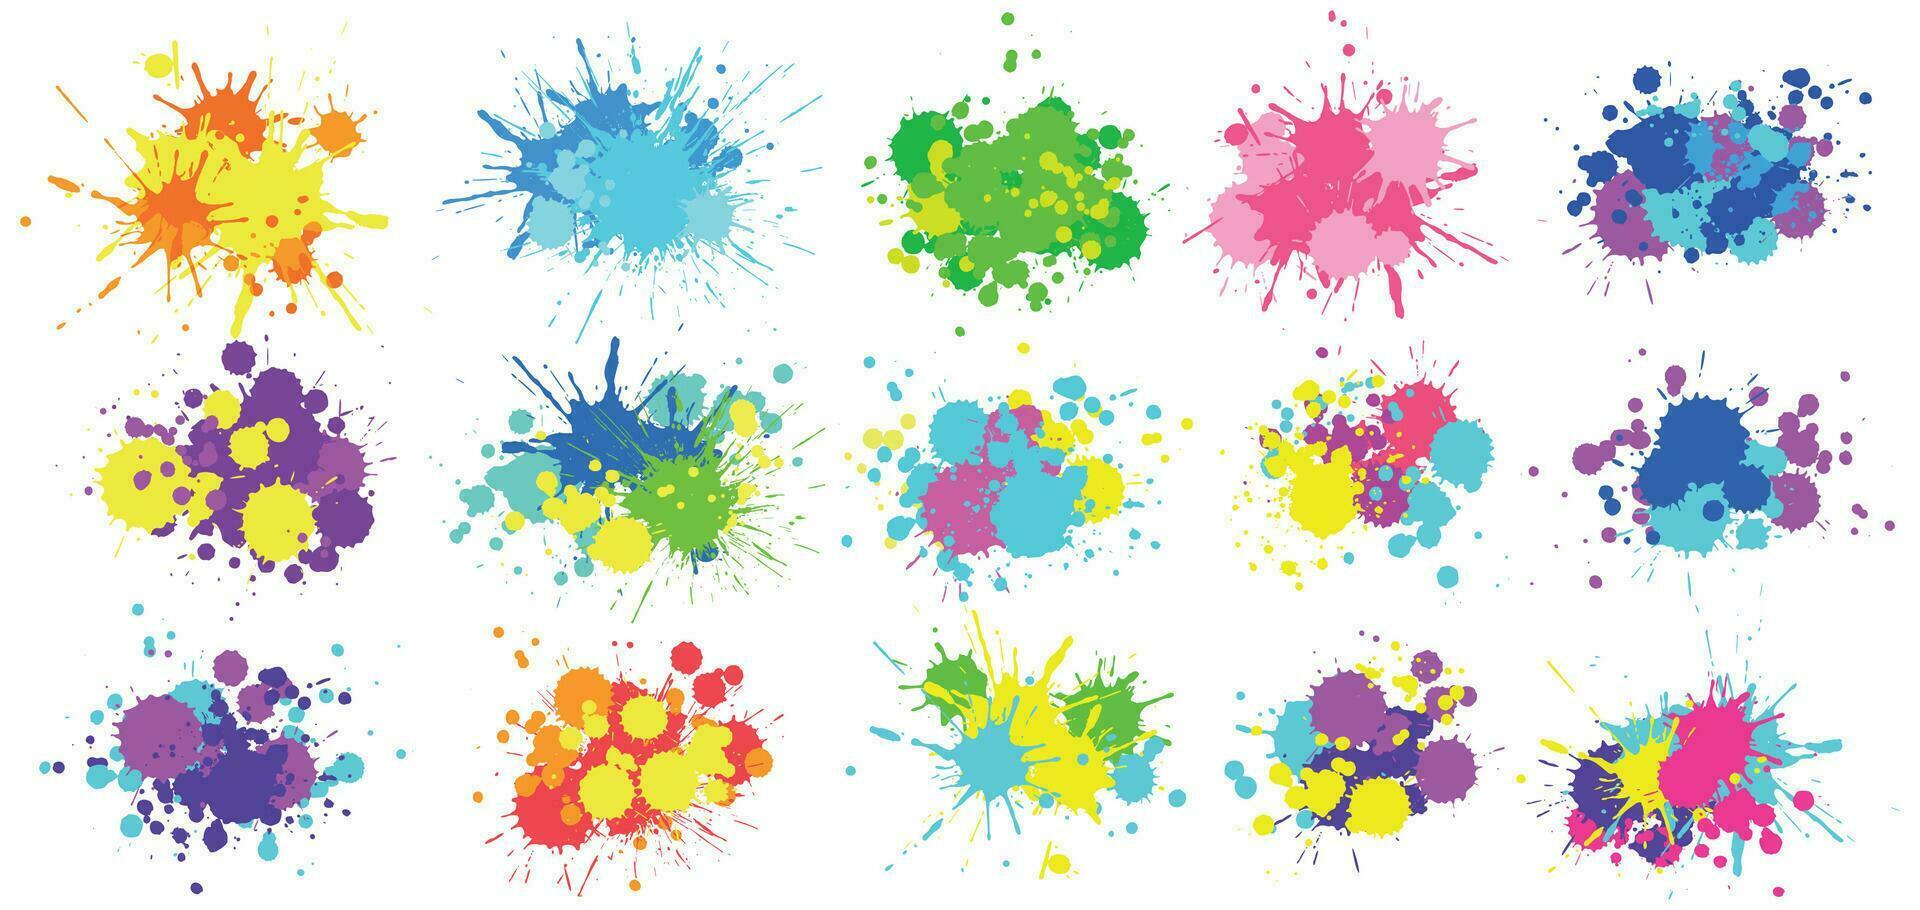 cor Espirrar. colorida pintura respingo, brilhante pintado gotejamento gotas e abstrato cores salpicos vetor gráfico conjunto